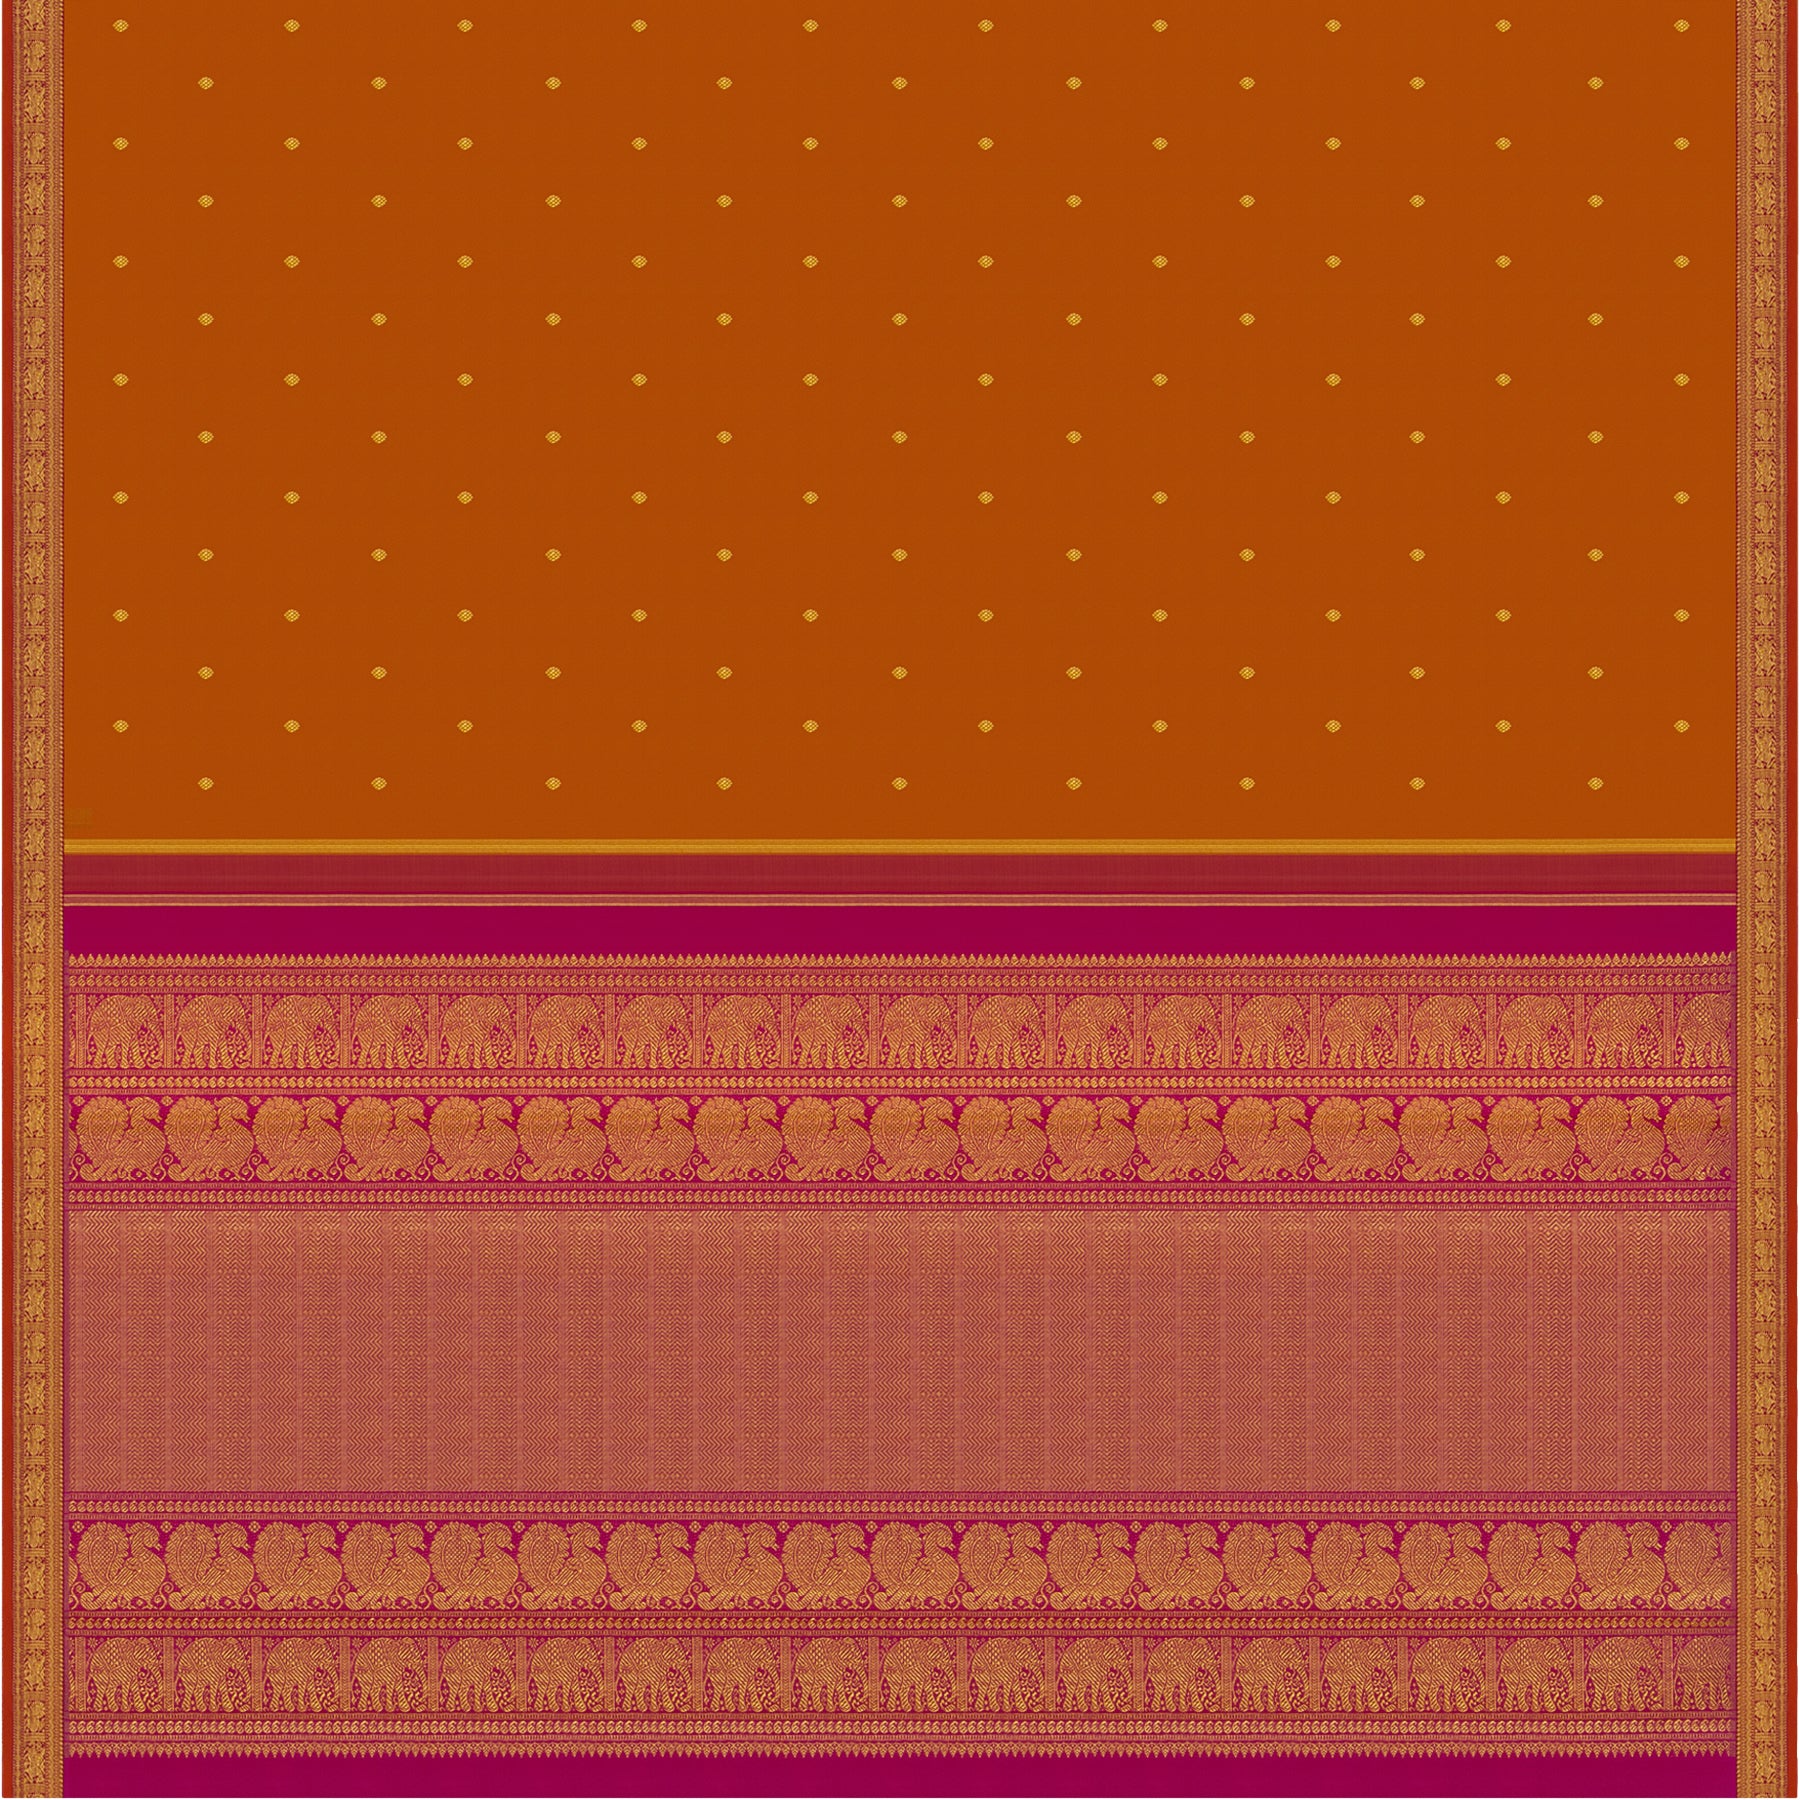 Kanakavalli Kanjivaram Silk Sari 23-110-HS001-13575 - Full View